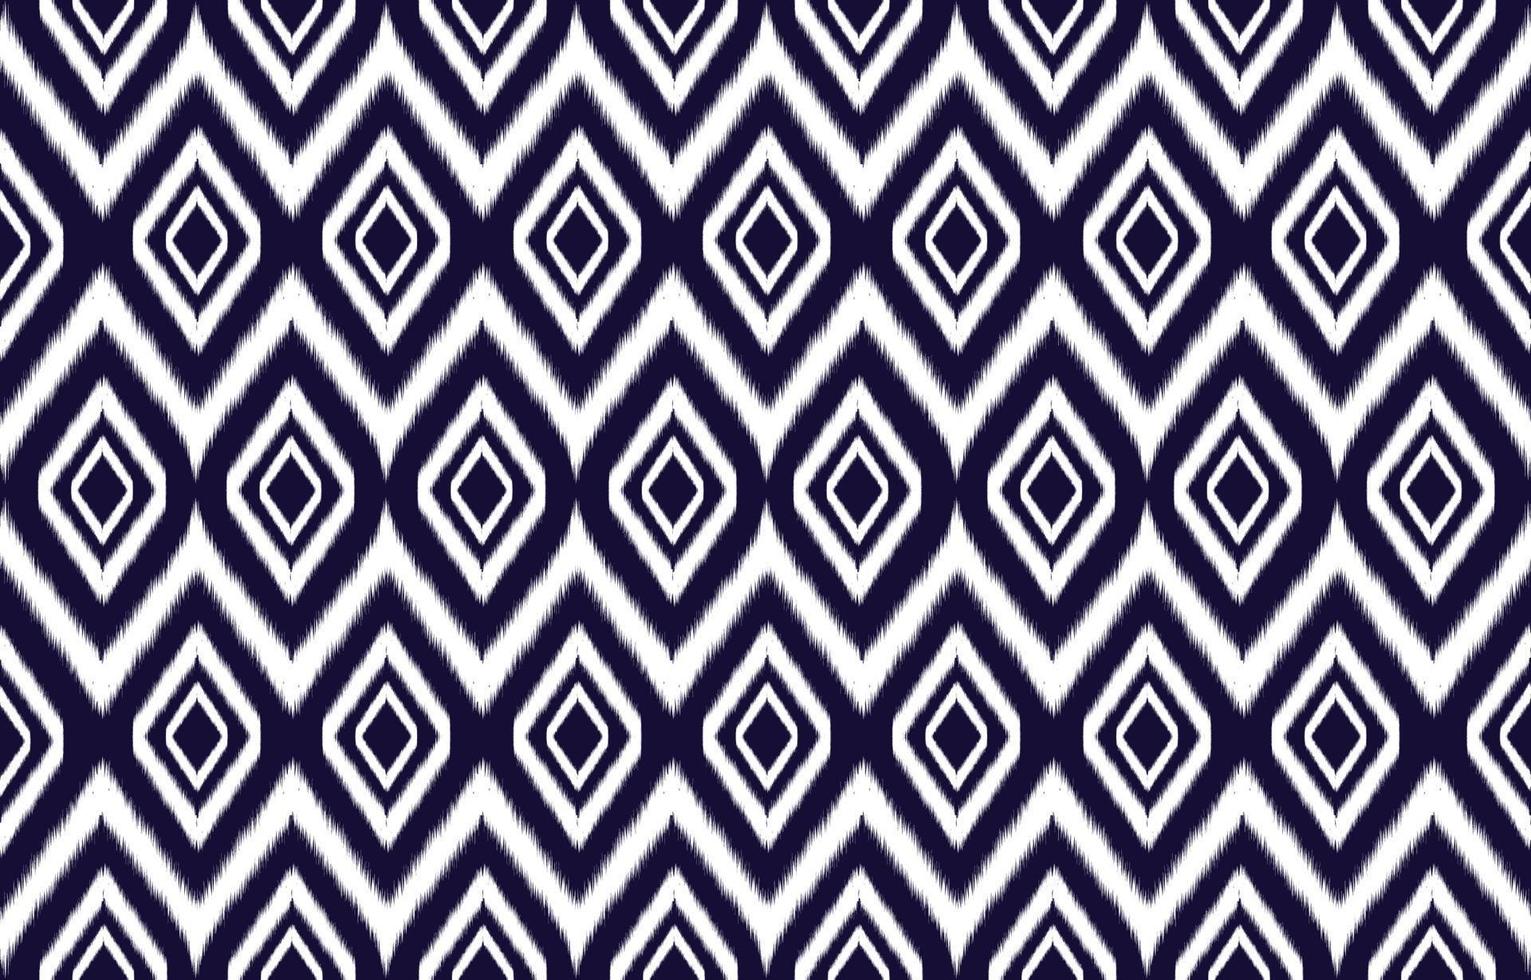 abstrakt etnisk geometrisk ikat mönster. orientalisk afrikansk amerikan mexikansk aztec motiv textil- och bohemisk mönster vektor element. designad för bakgrund, tapet, skriva ut .vektor ikat mönster.